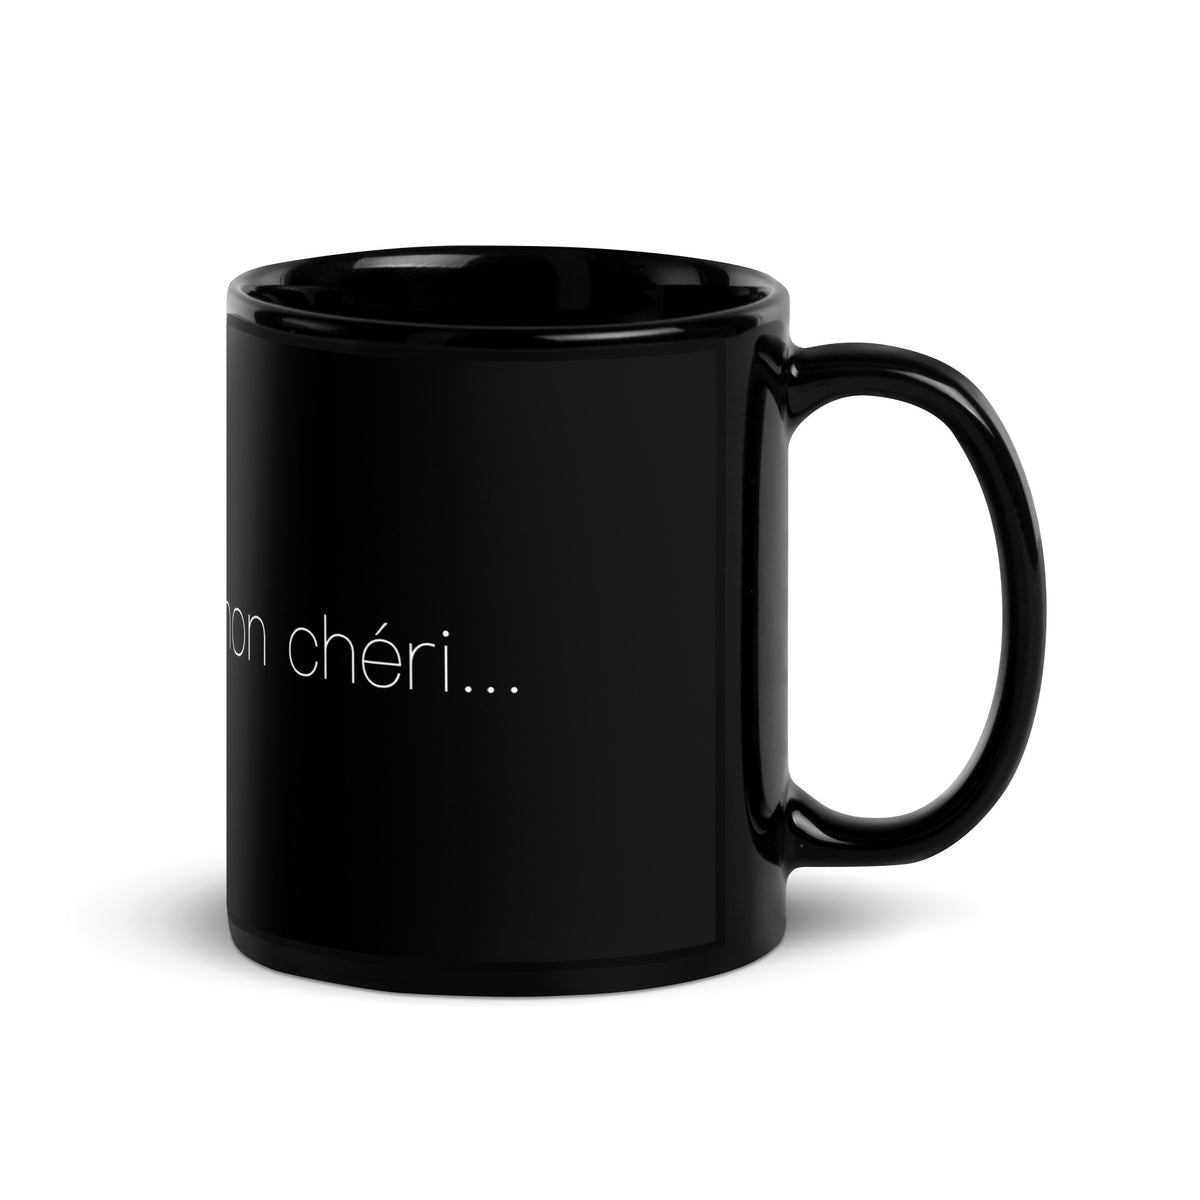 Side view of a black mug that says "c'est la vie, mon chéri"